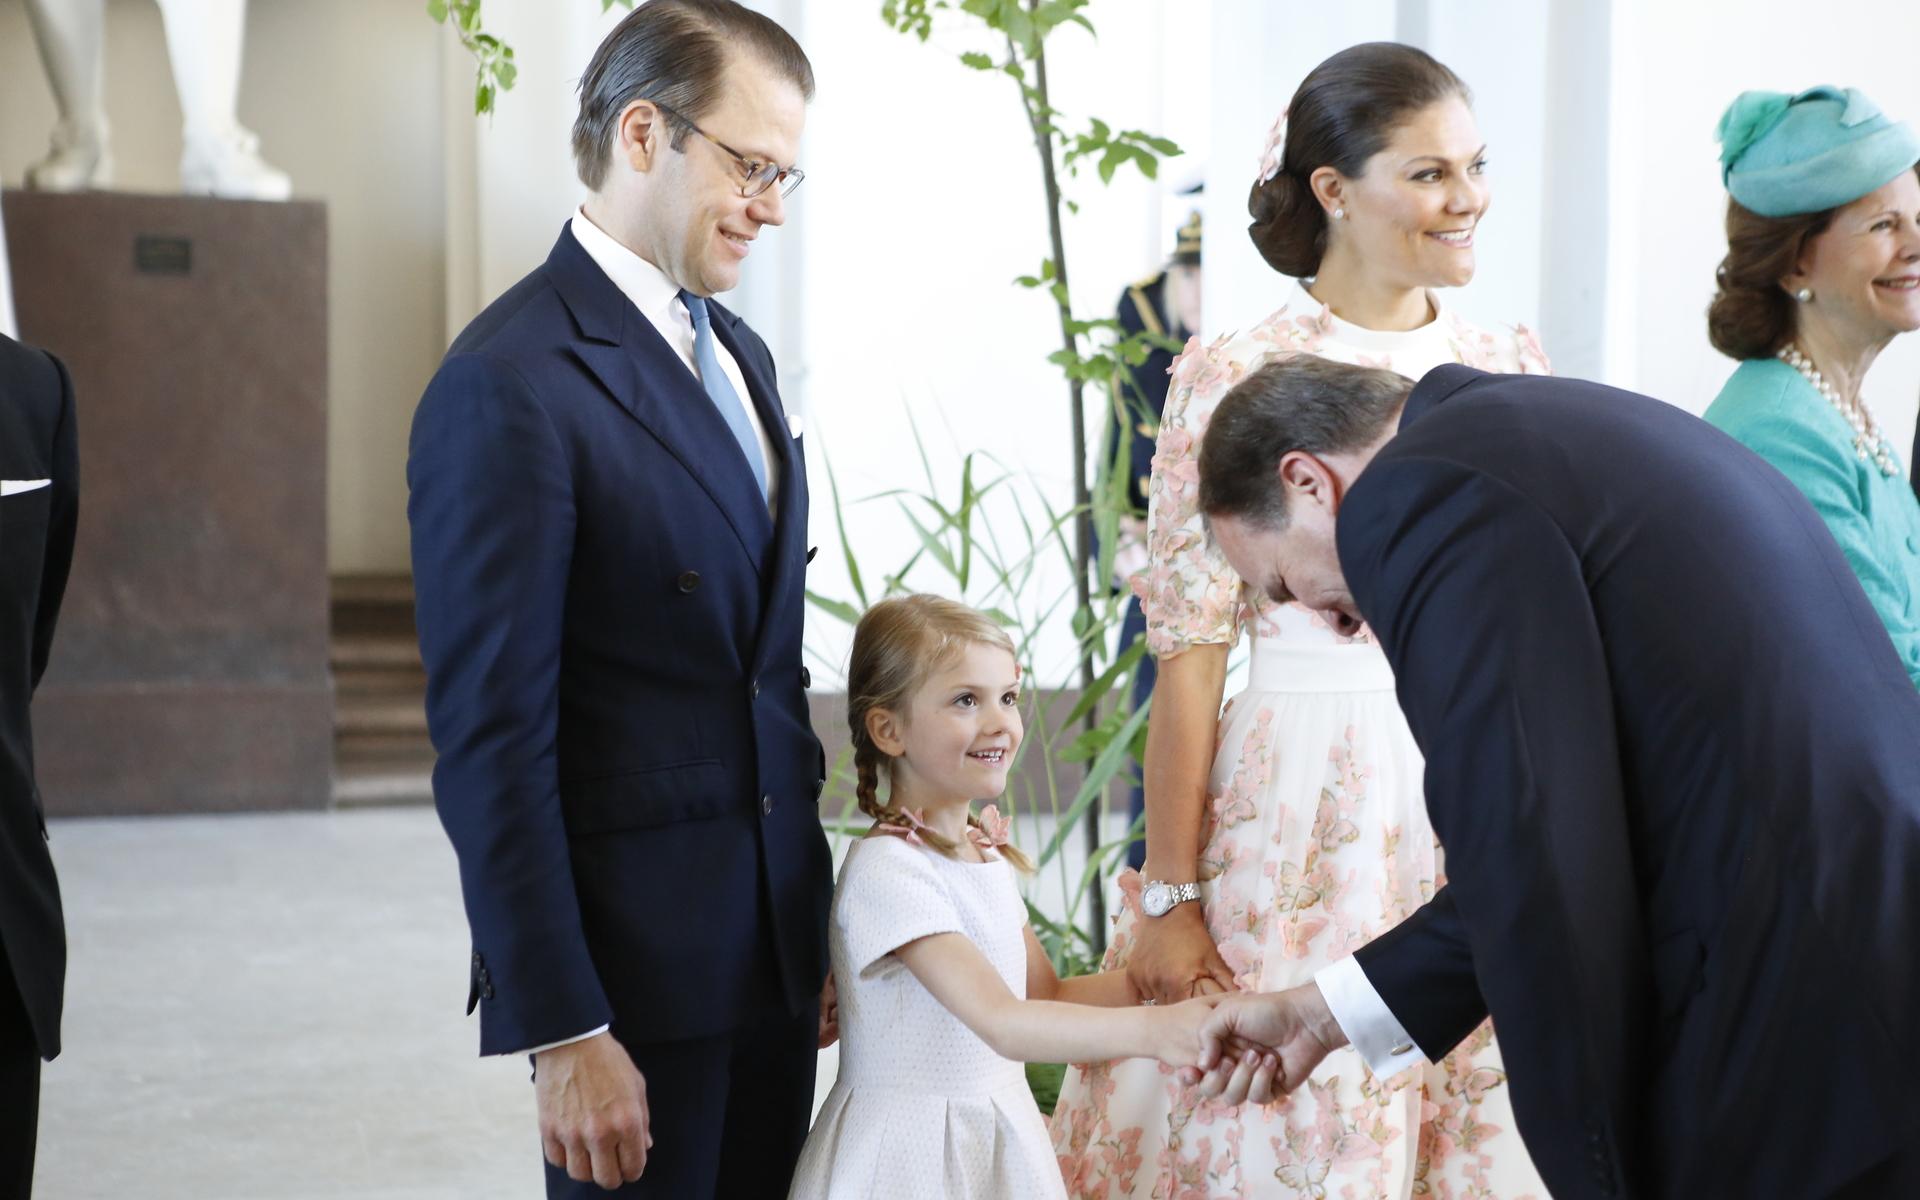 När mamma fyllde 40 år hälsade prinsessan Estelle på den dåvarande statsministern Stefan Löfven när han kom till mottagningen. Arkvibild.